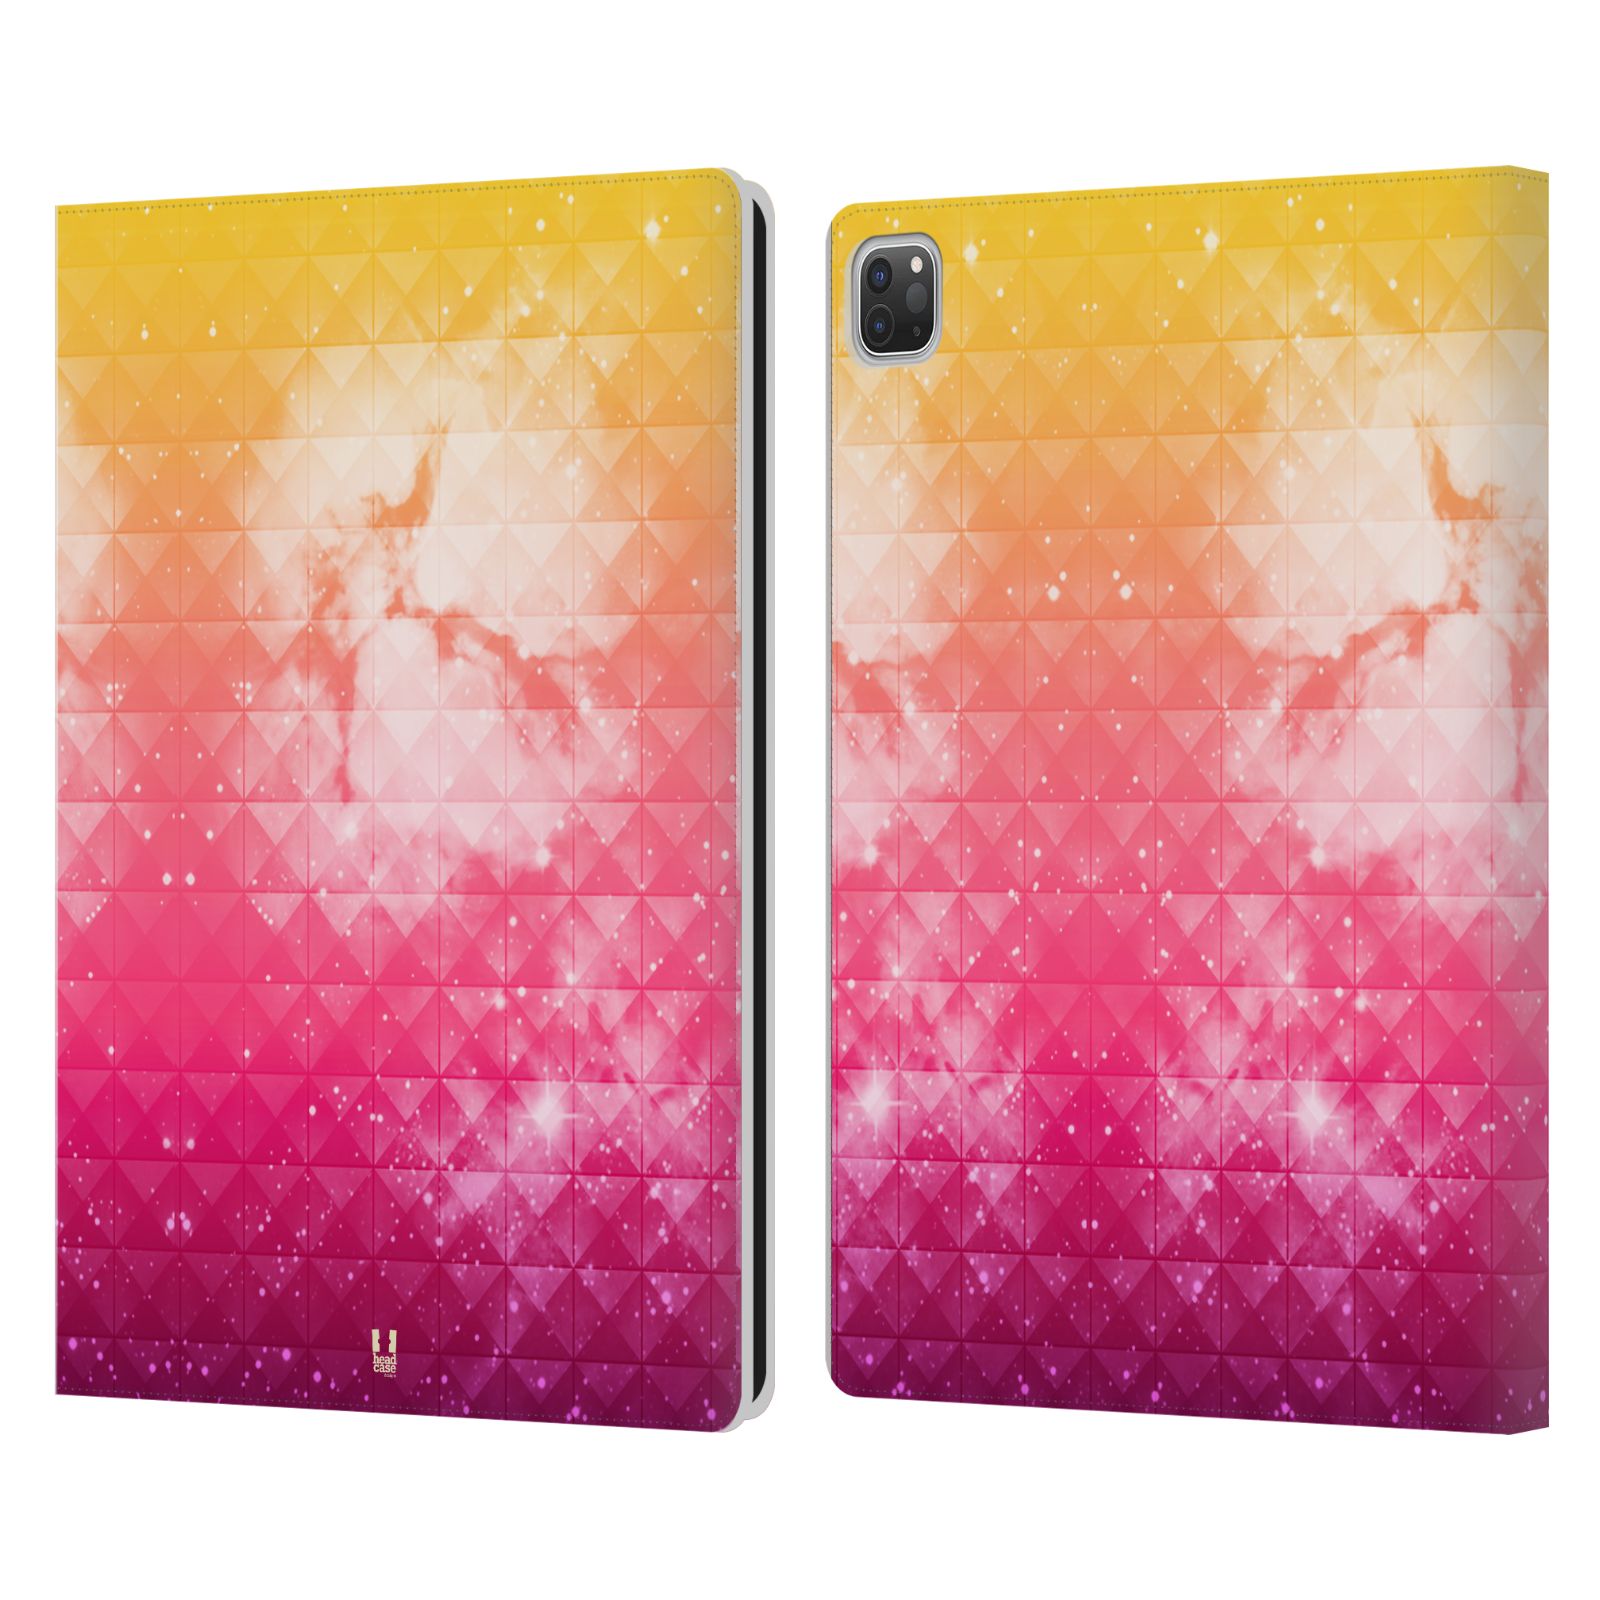 Pouzdro pro tablet Apple Ipad Pro 12.9 - HEAD CASE - barevná vesmírná mlhovina oranžová a růžová